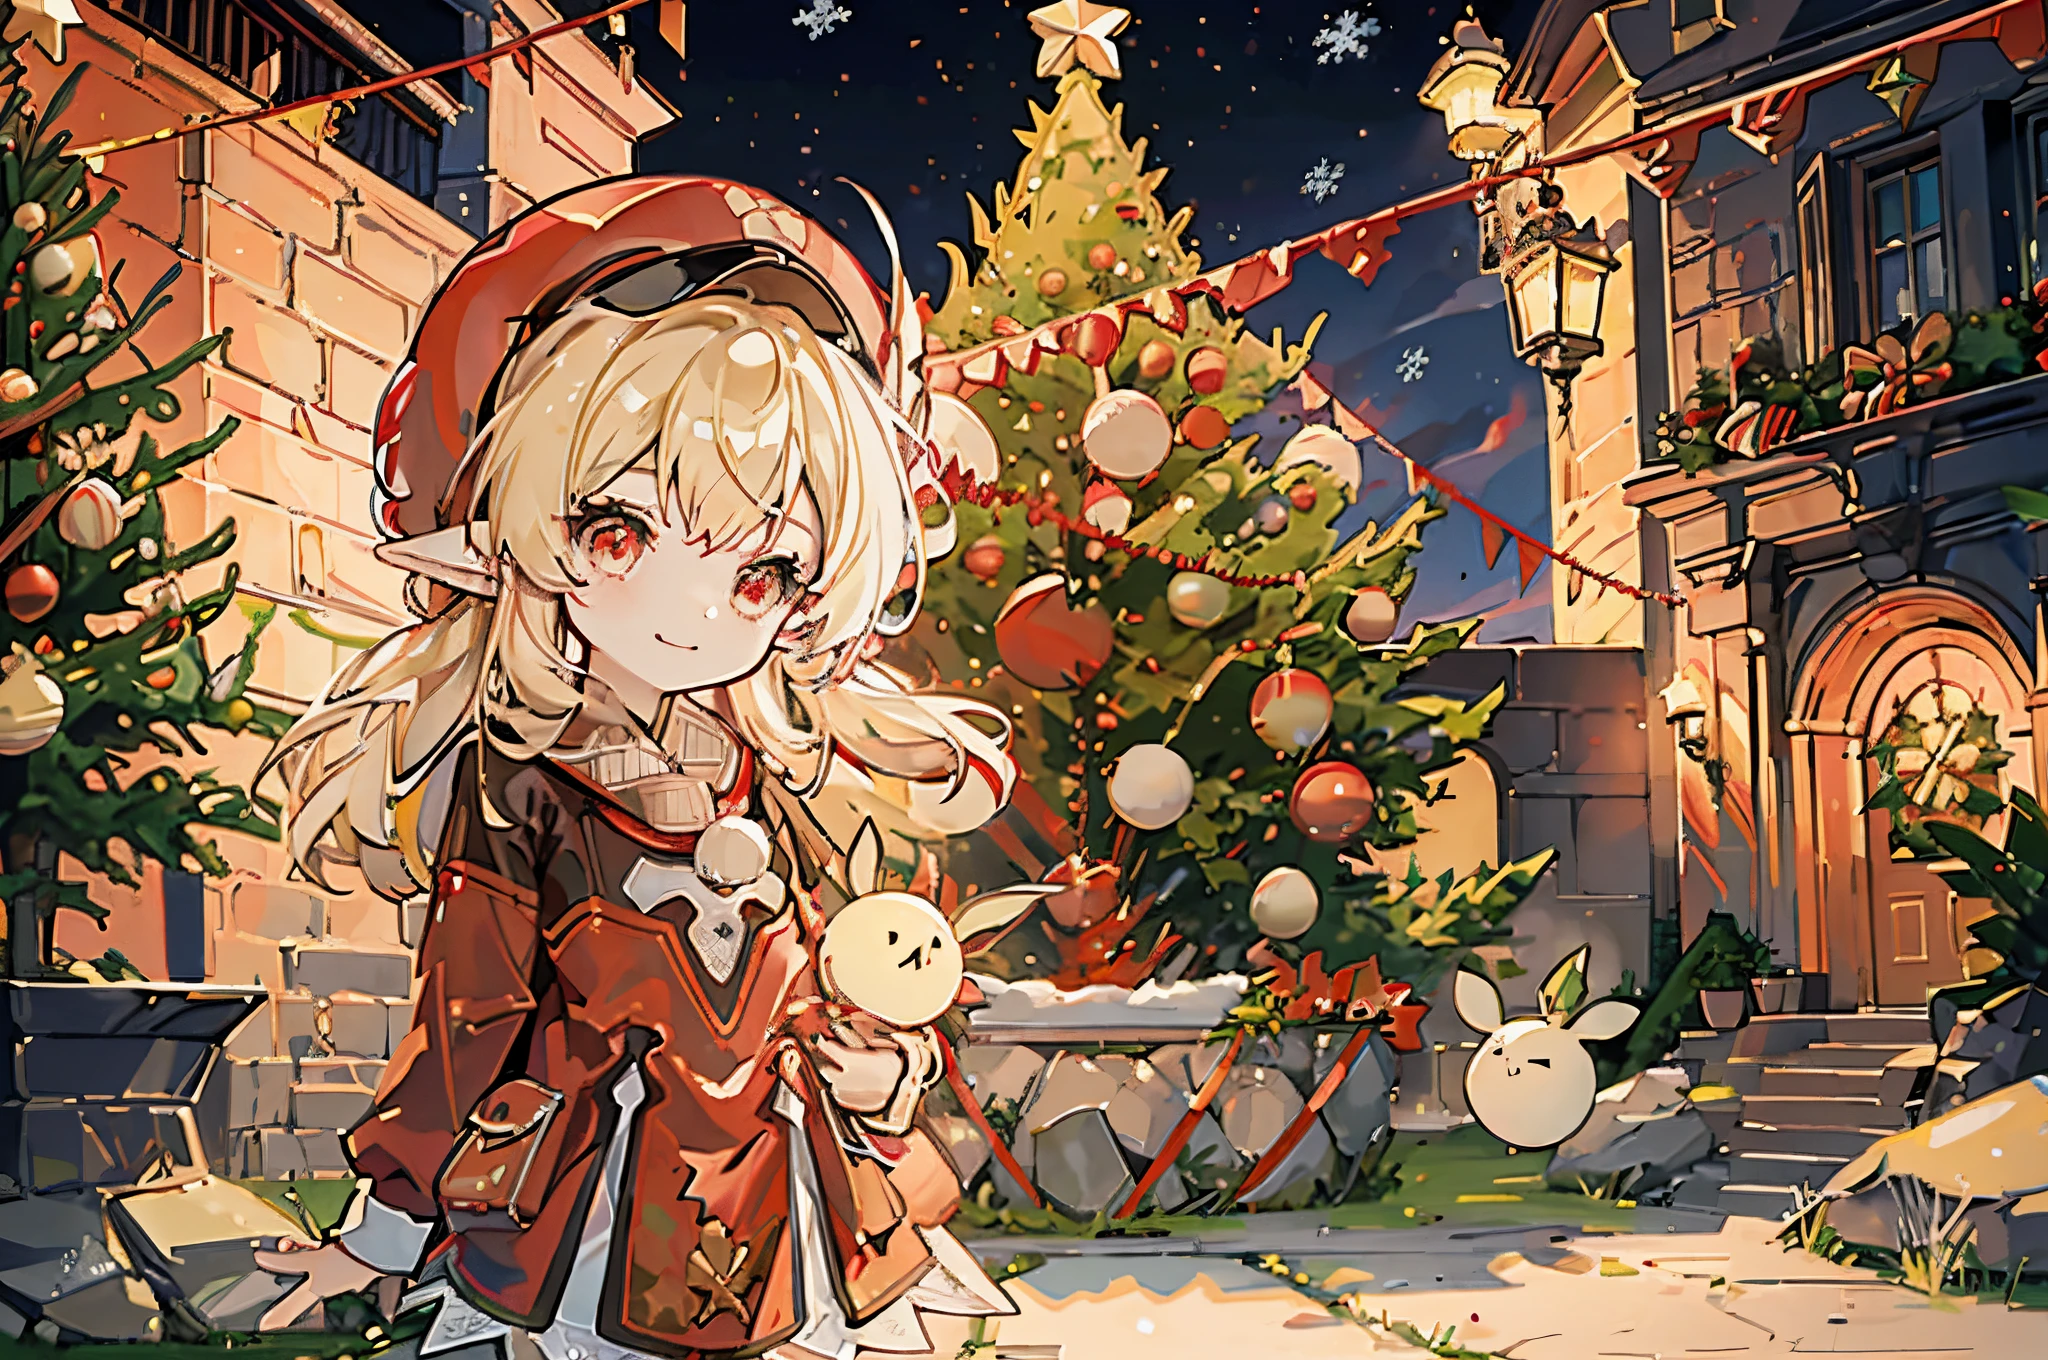 1 pequena garota chibi sozinha, ((decorating a árvore de Natal)), cabelo loiro, olhos vermelhos, orelhas de elfo, chapéu vermelho, roupa vermelha, do lado de fora, perto da muralha do castelo de pedra, Sorriso feliz, (((árvore de Natal)))